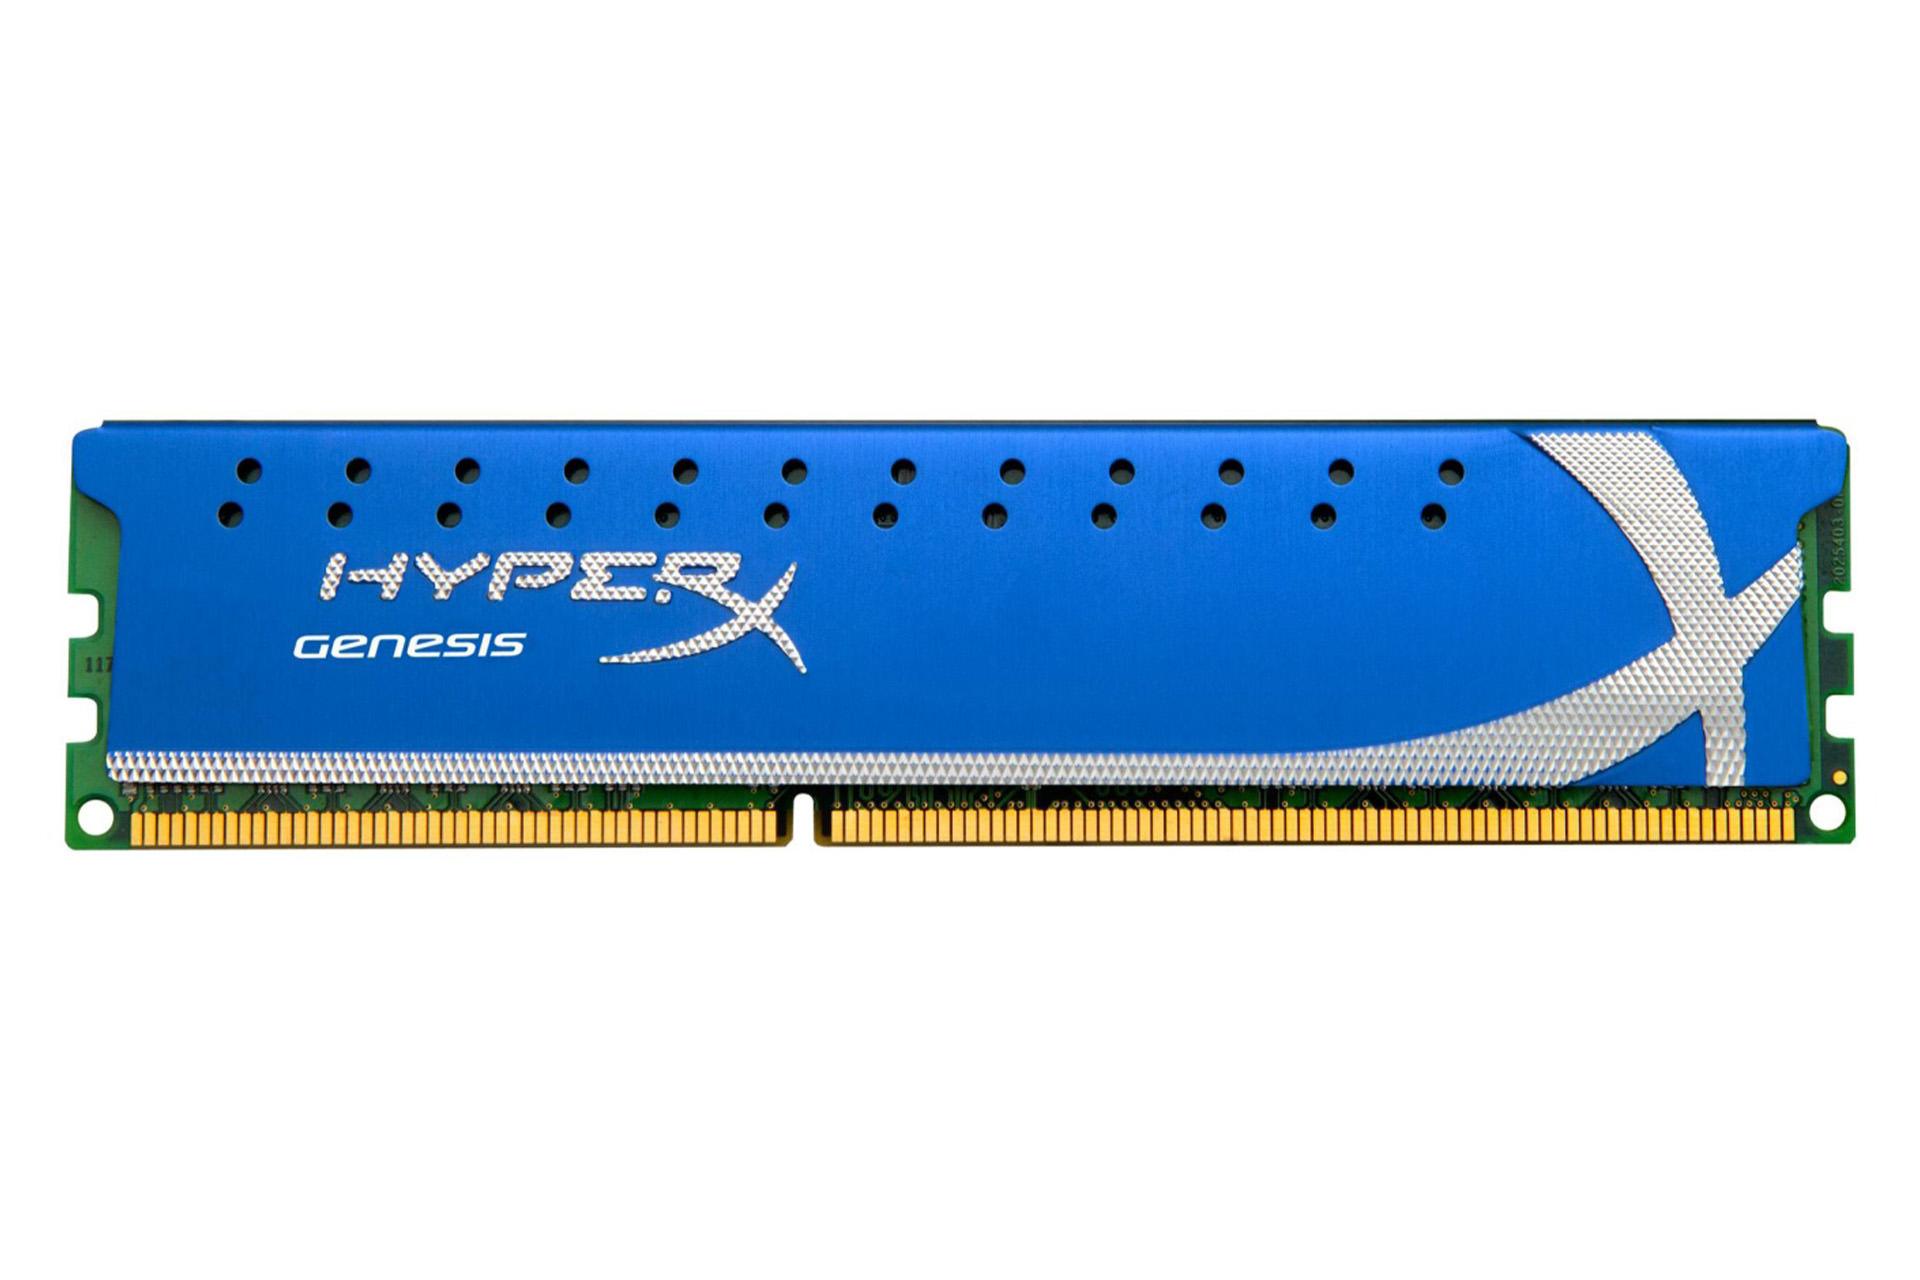 حافظه رم هایپر ایکس Genesis ظرفیت 4 گیگابایت از نوع DDR3-1866